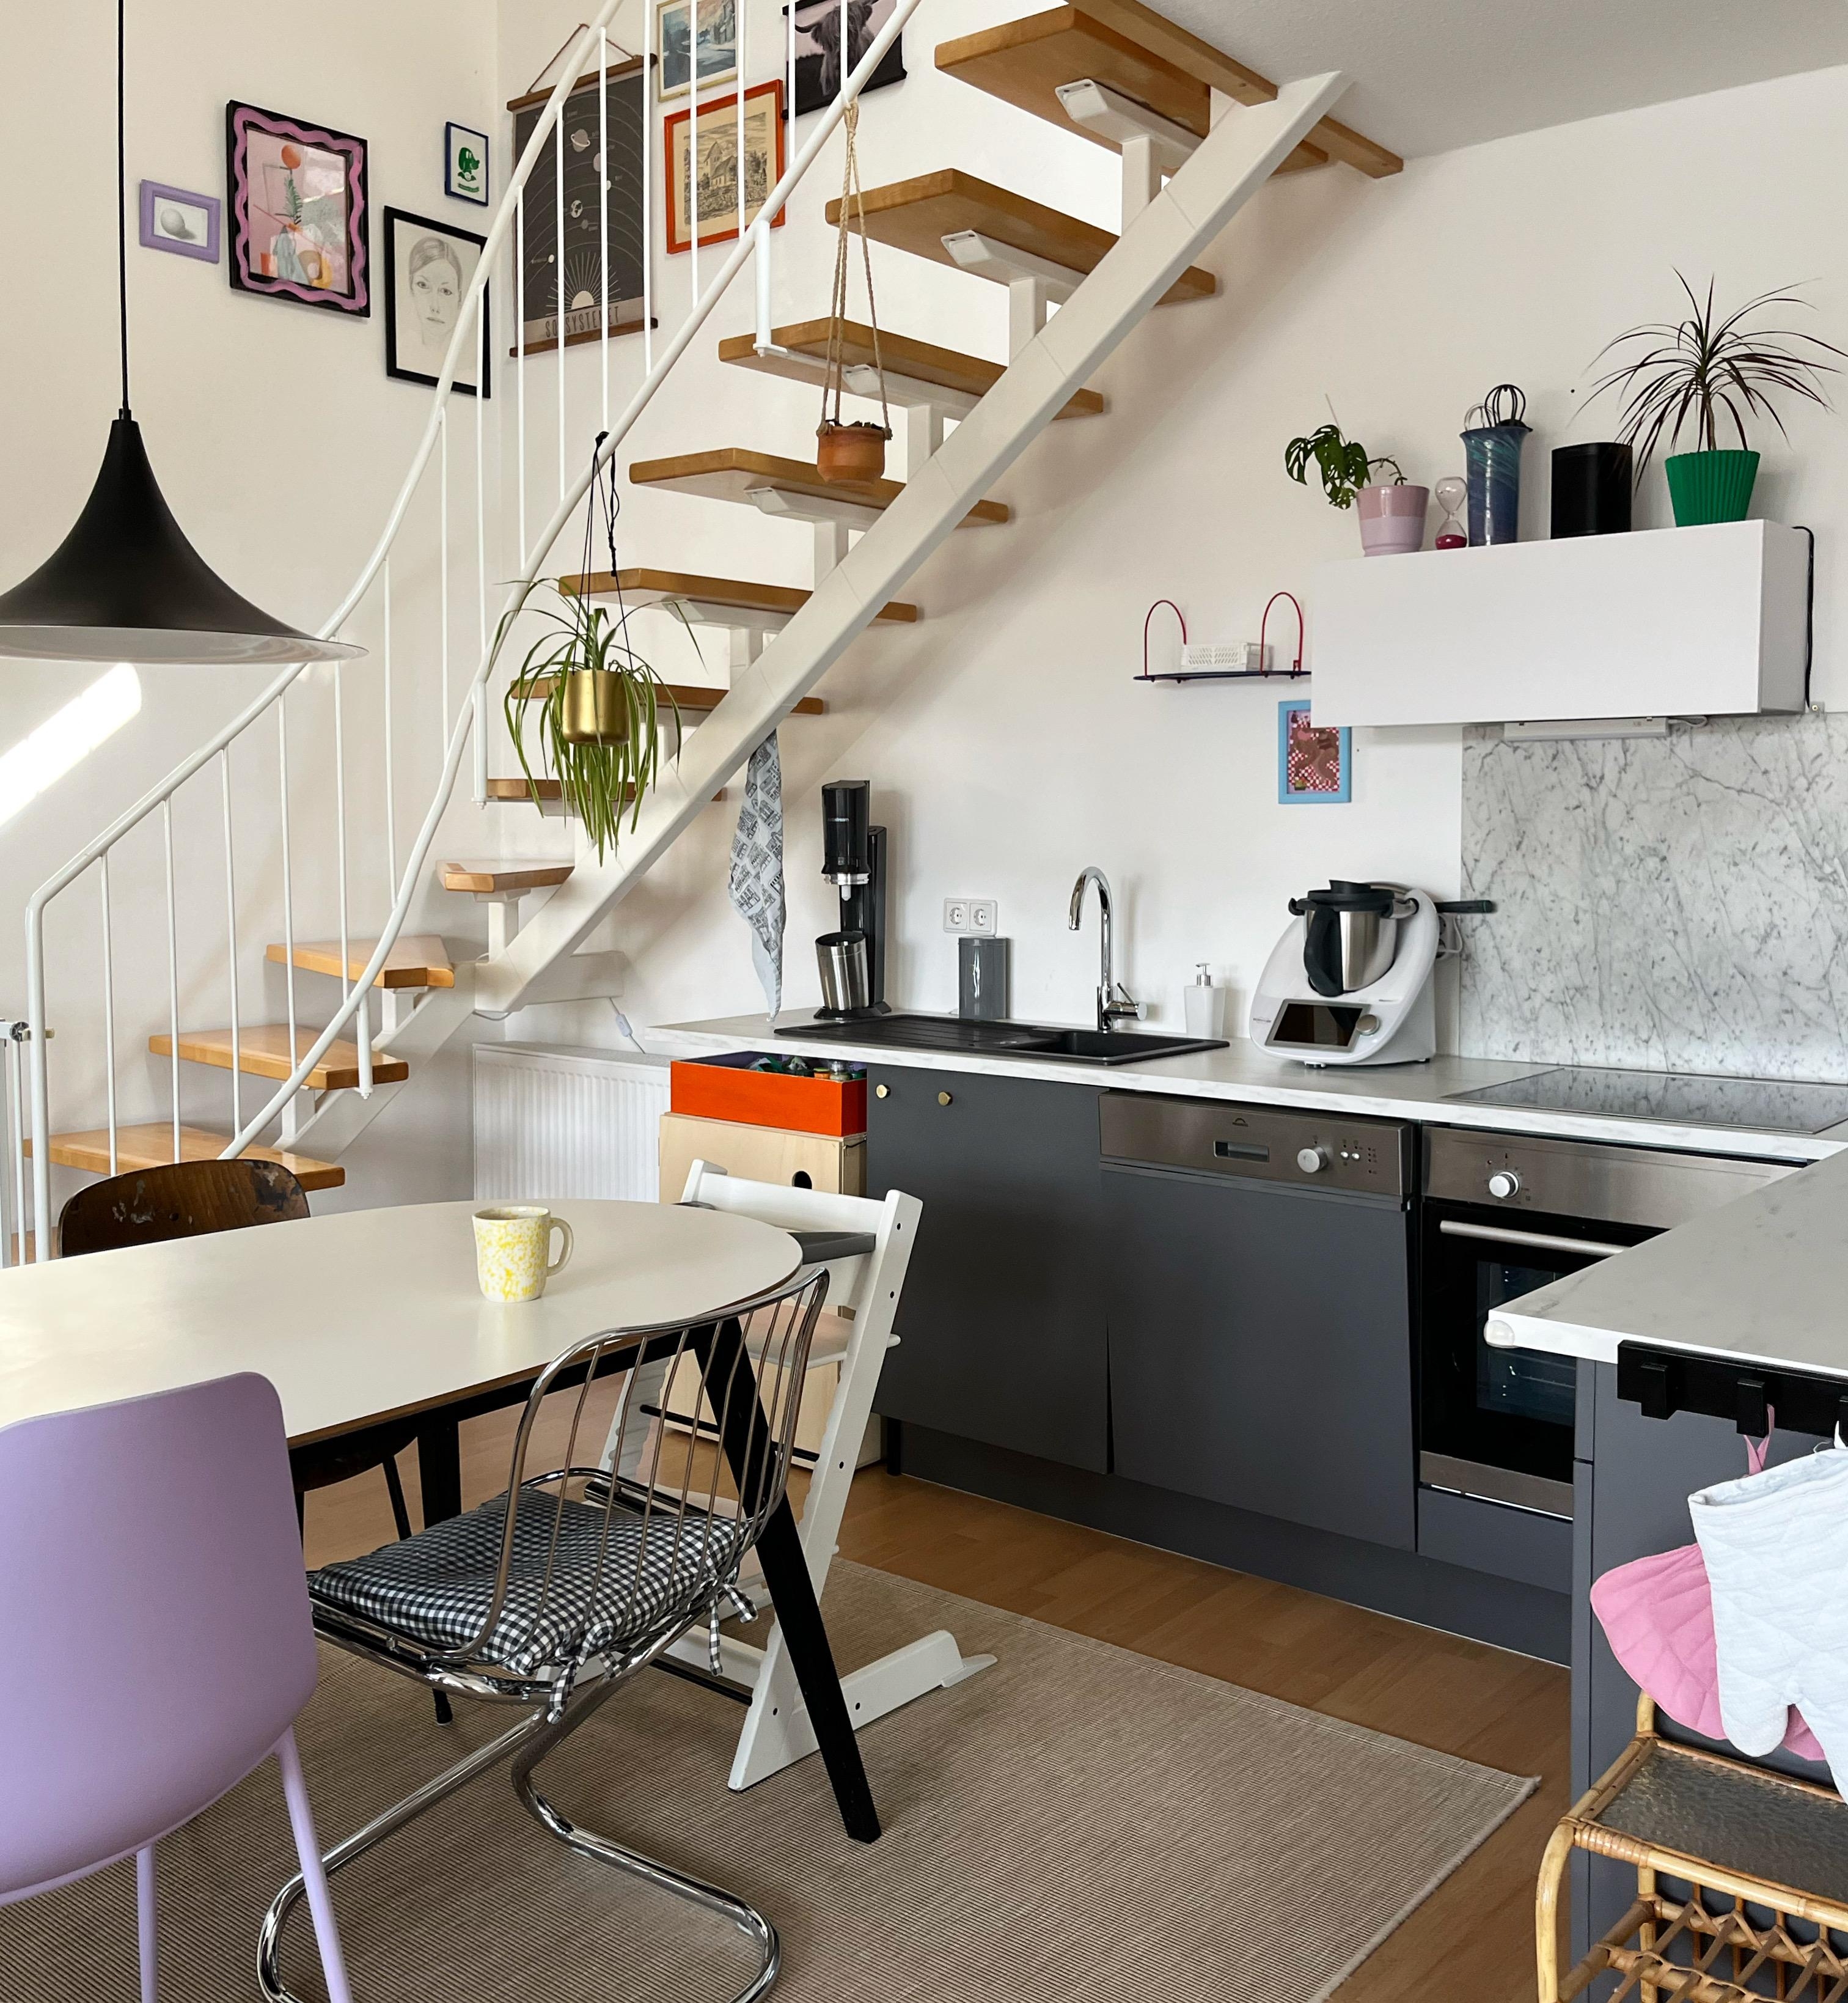 Unsere einzigartige #wohnküche 🫶🏻
#kitchenlove #esstisch #küche #küchenliebe #maisonette #treppe #cosyhome #skandihome